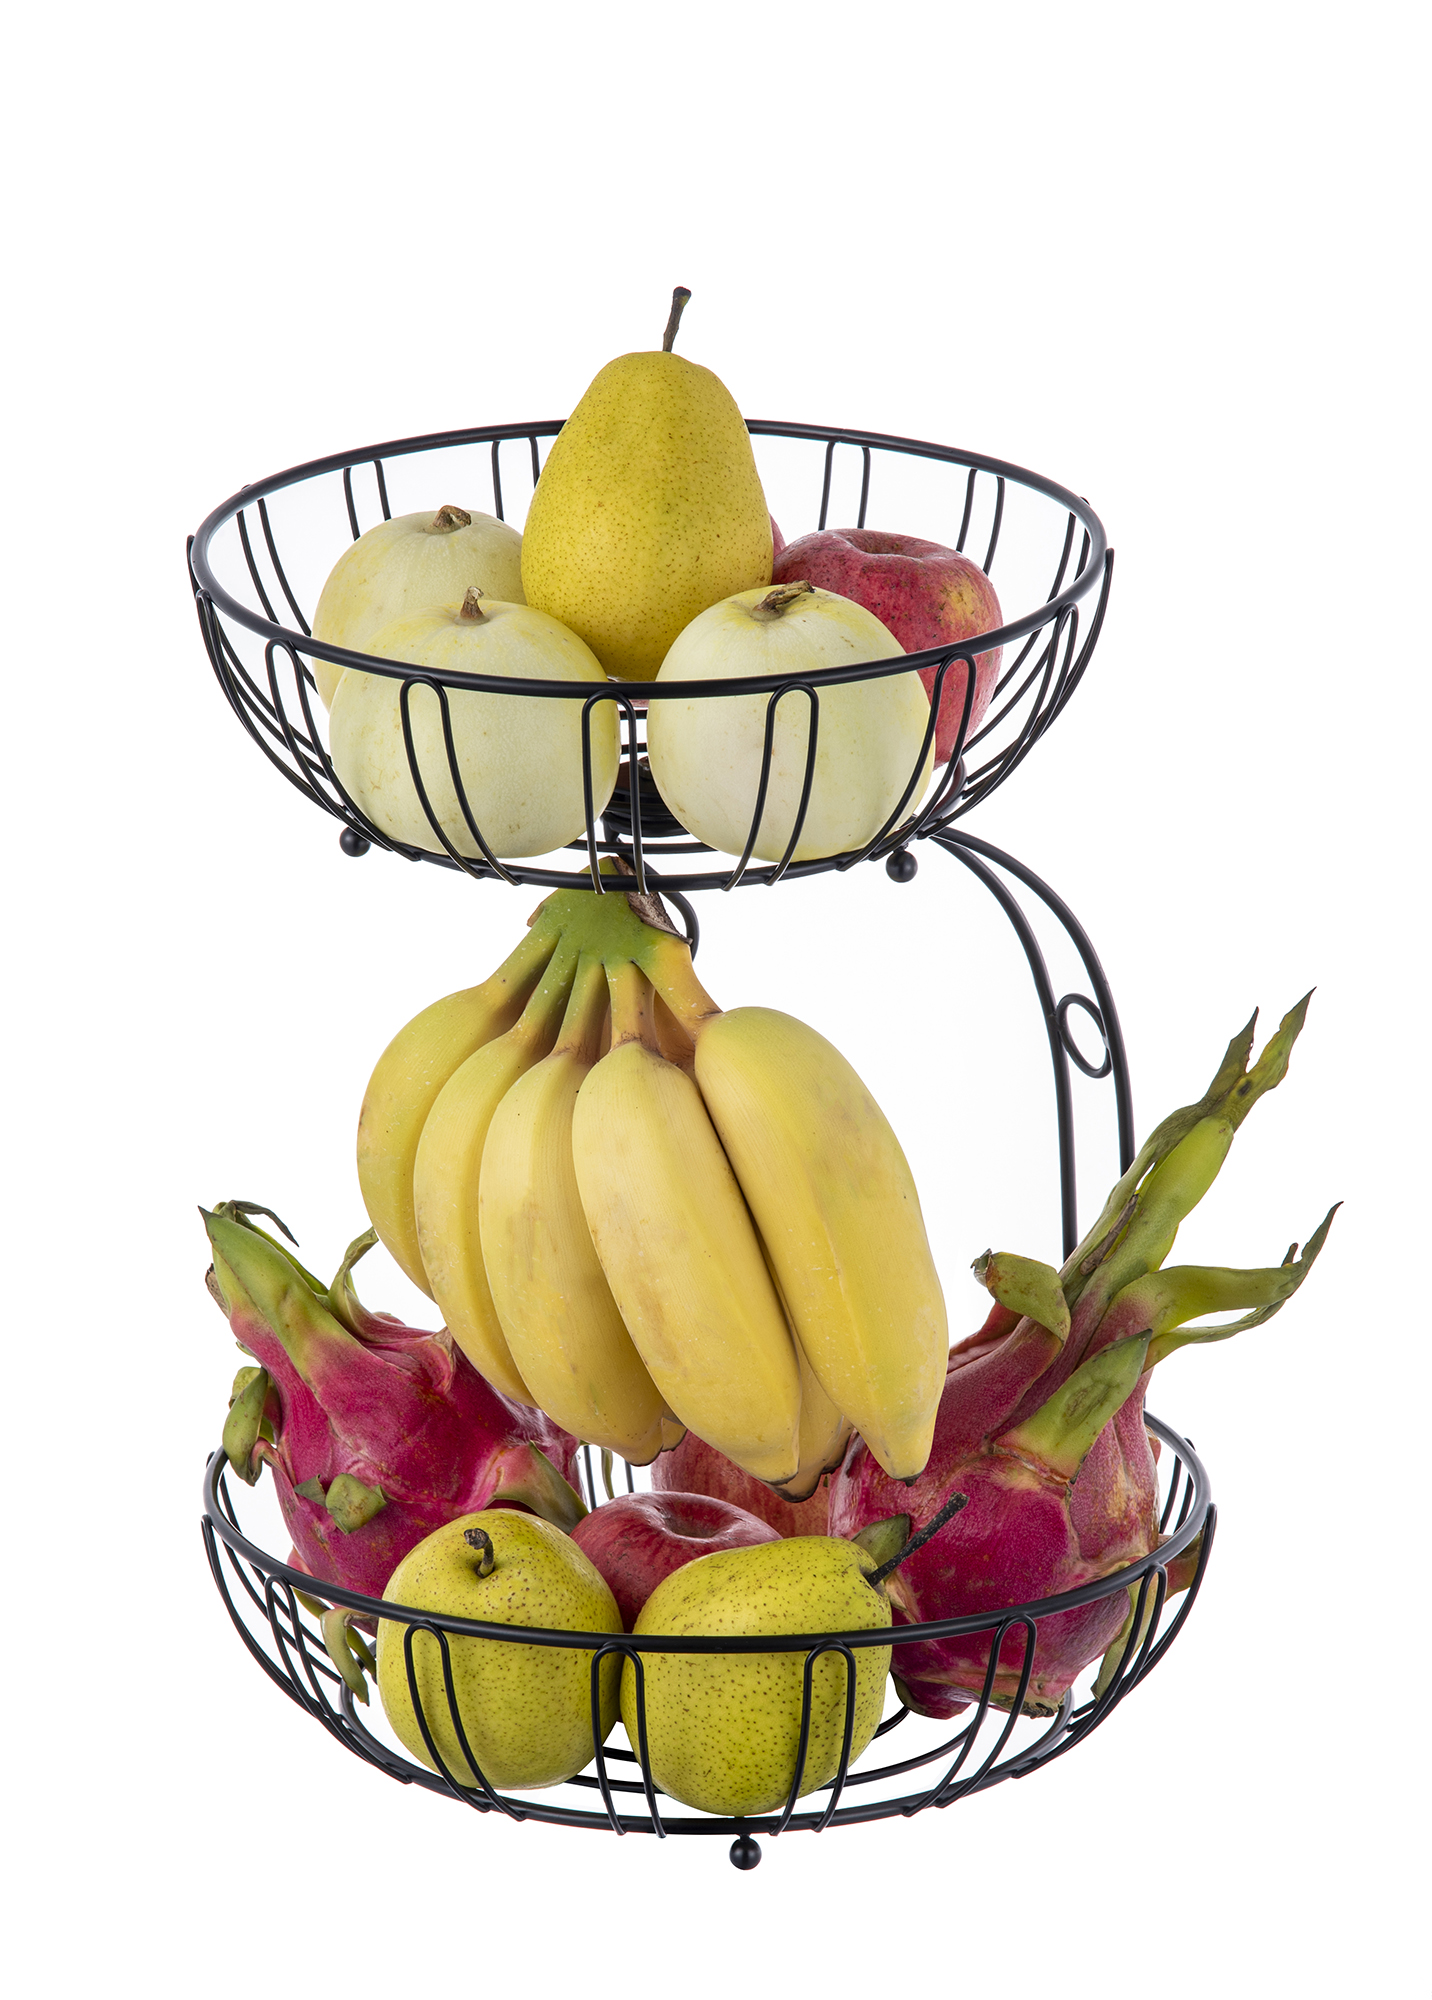 Panier de fruits à double couche avec banane.mp4